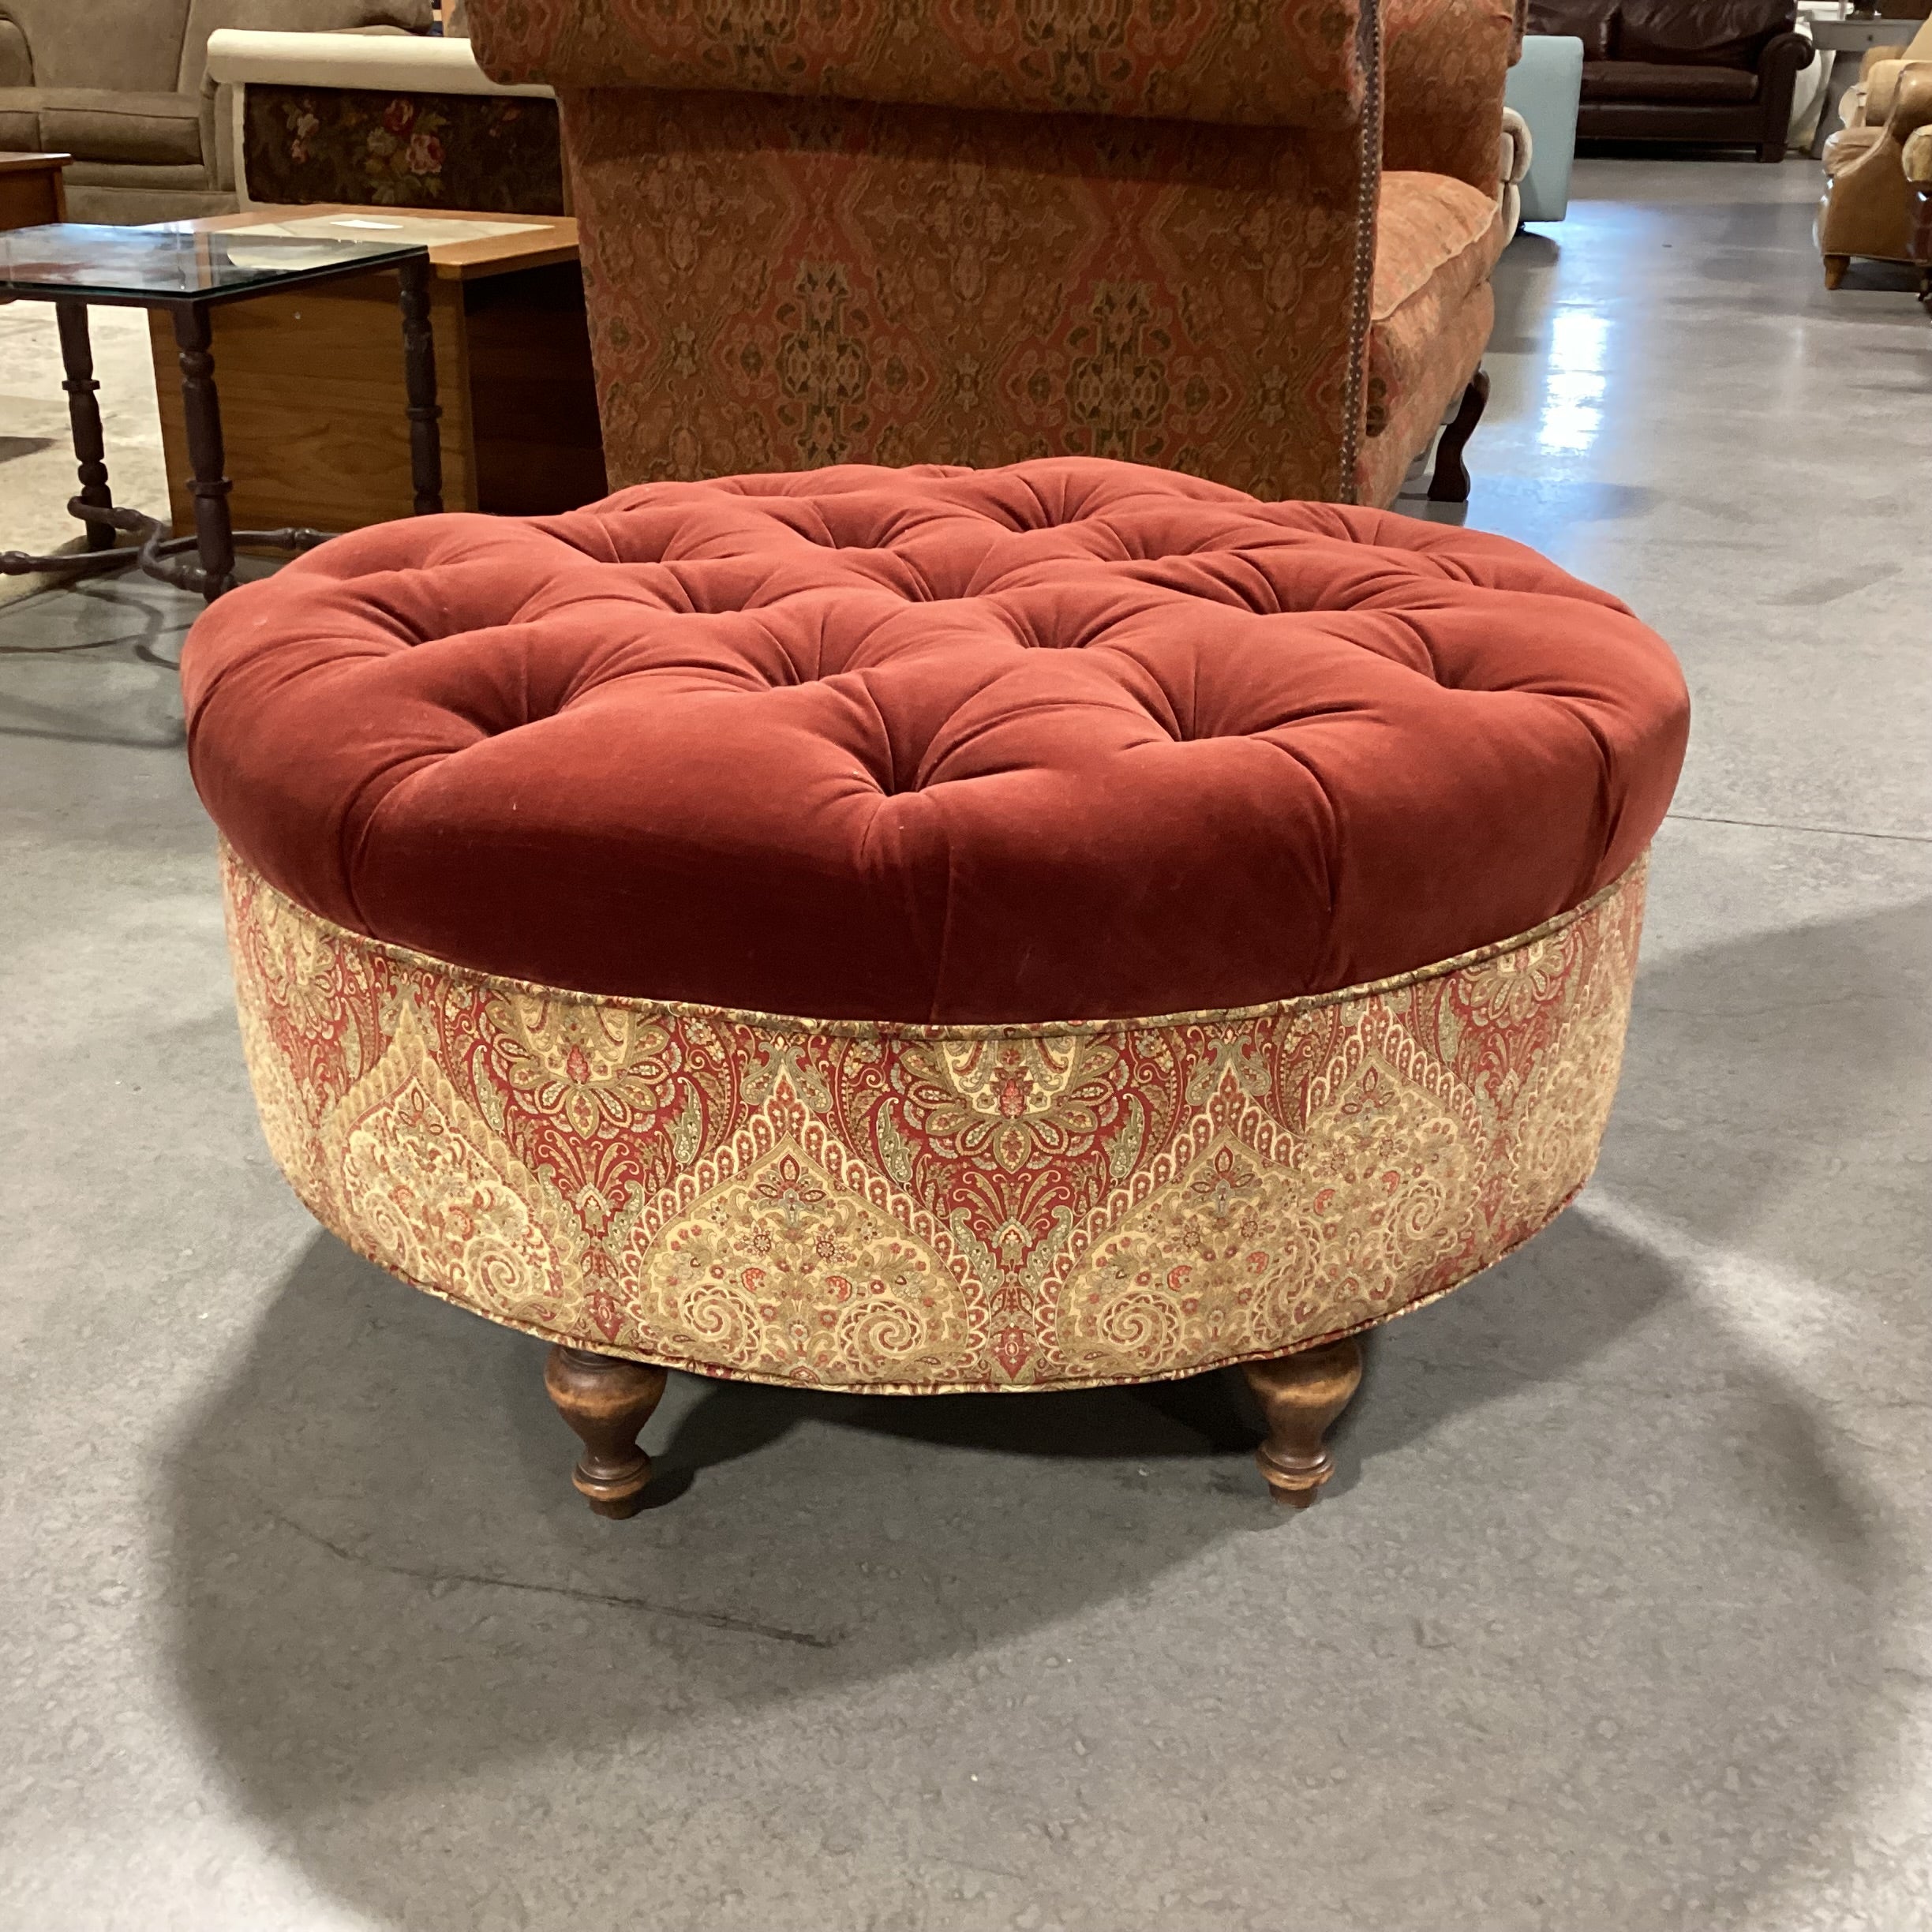 Custom Red Velvet Tufted & Upholstered Round Ottoman 38" Diameter x 19"